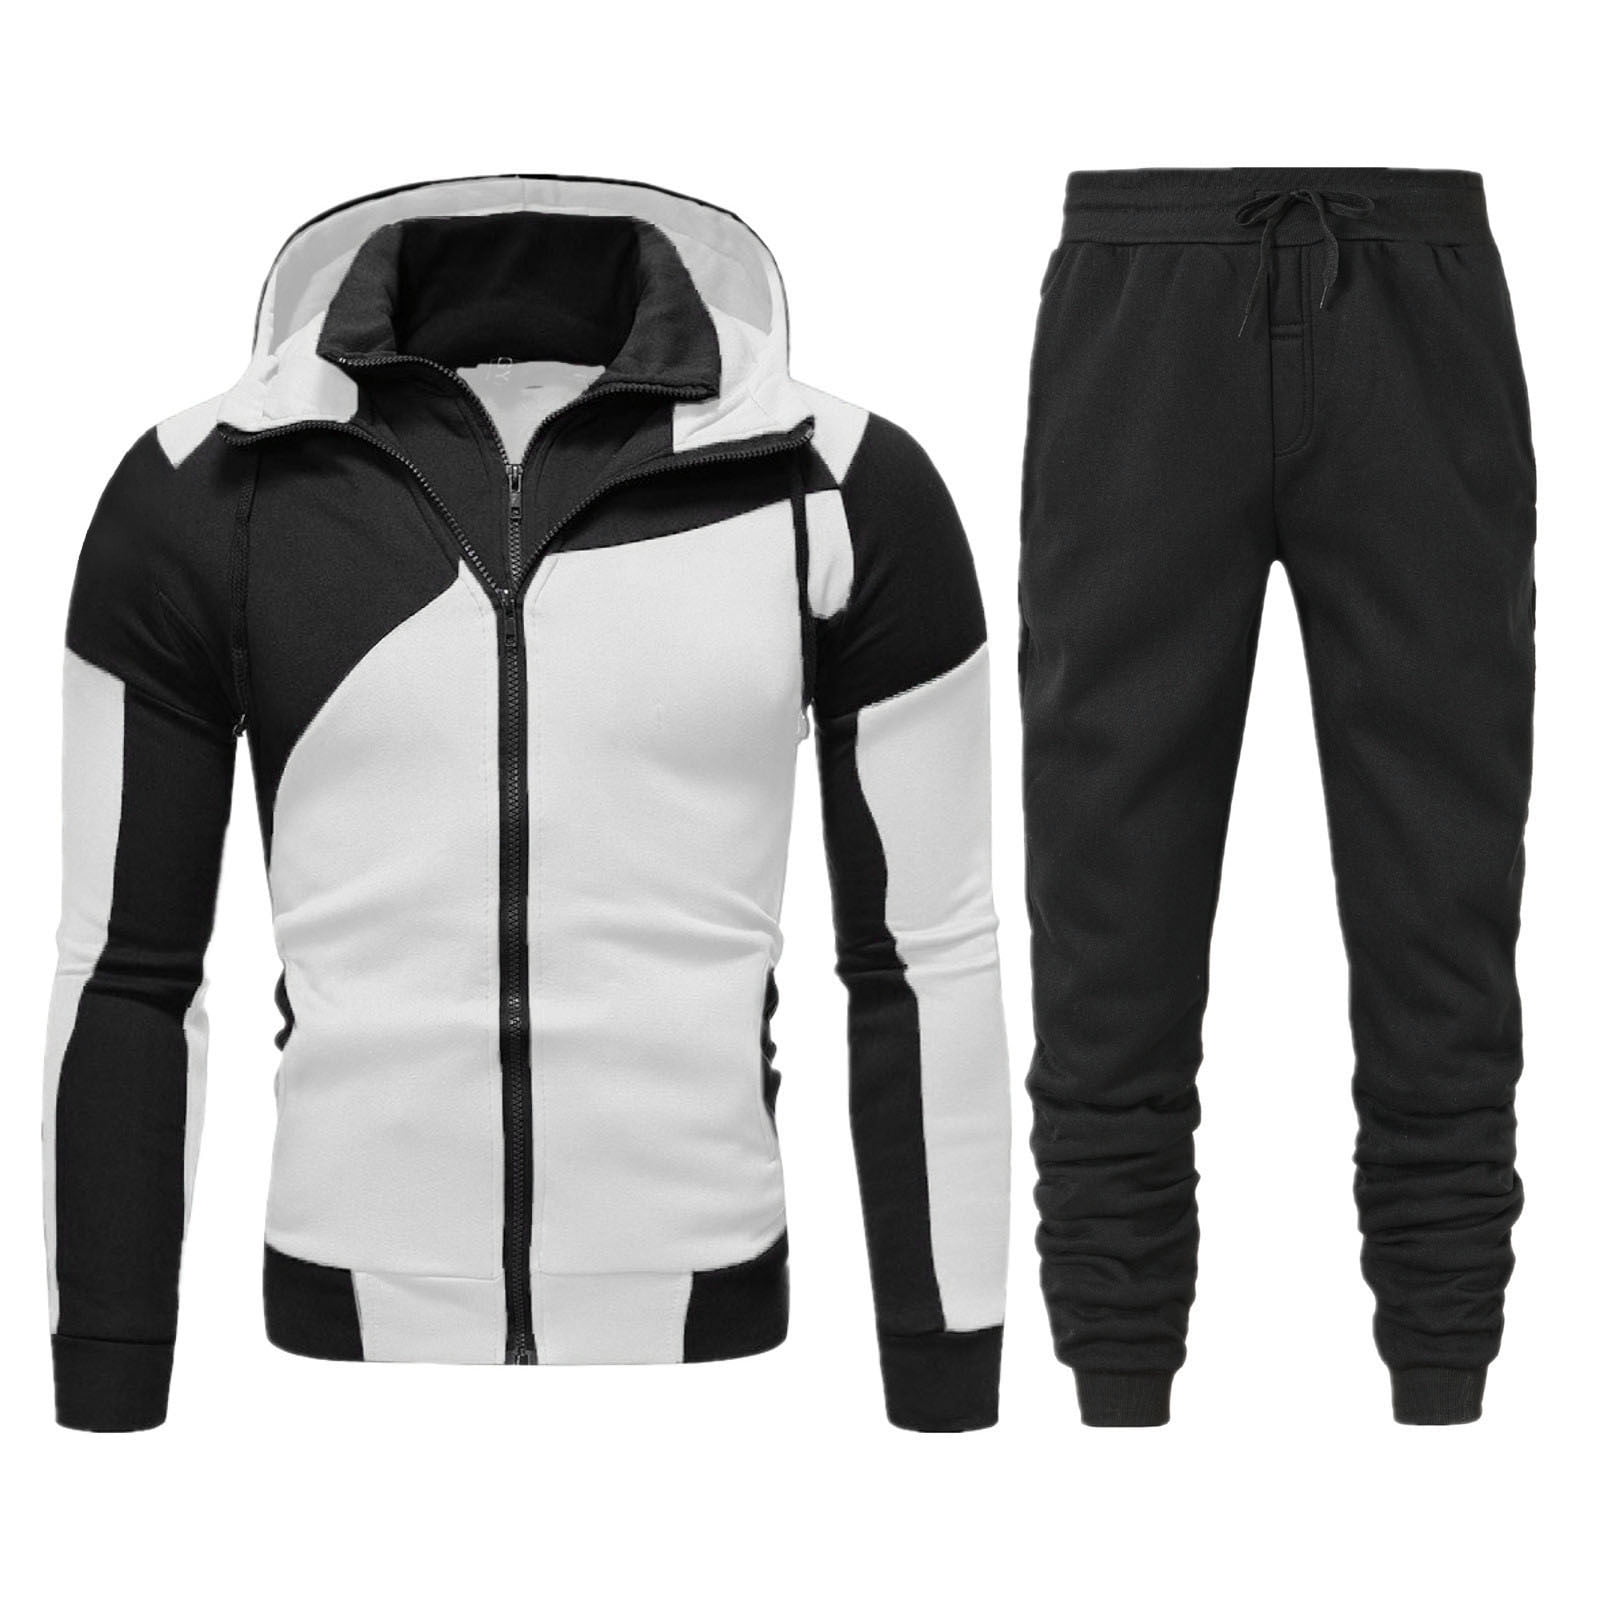 8QIDA Men's Suit Jackets Men Autumn and Winter Set Leisure Zipper ...